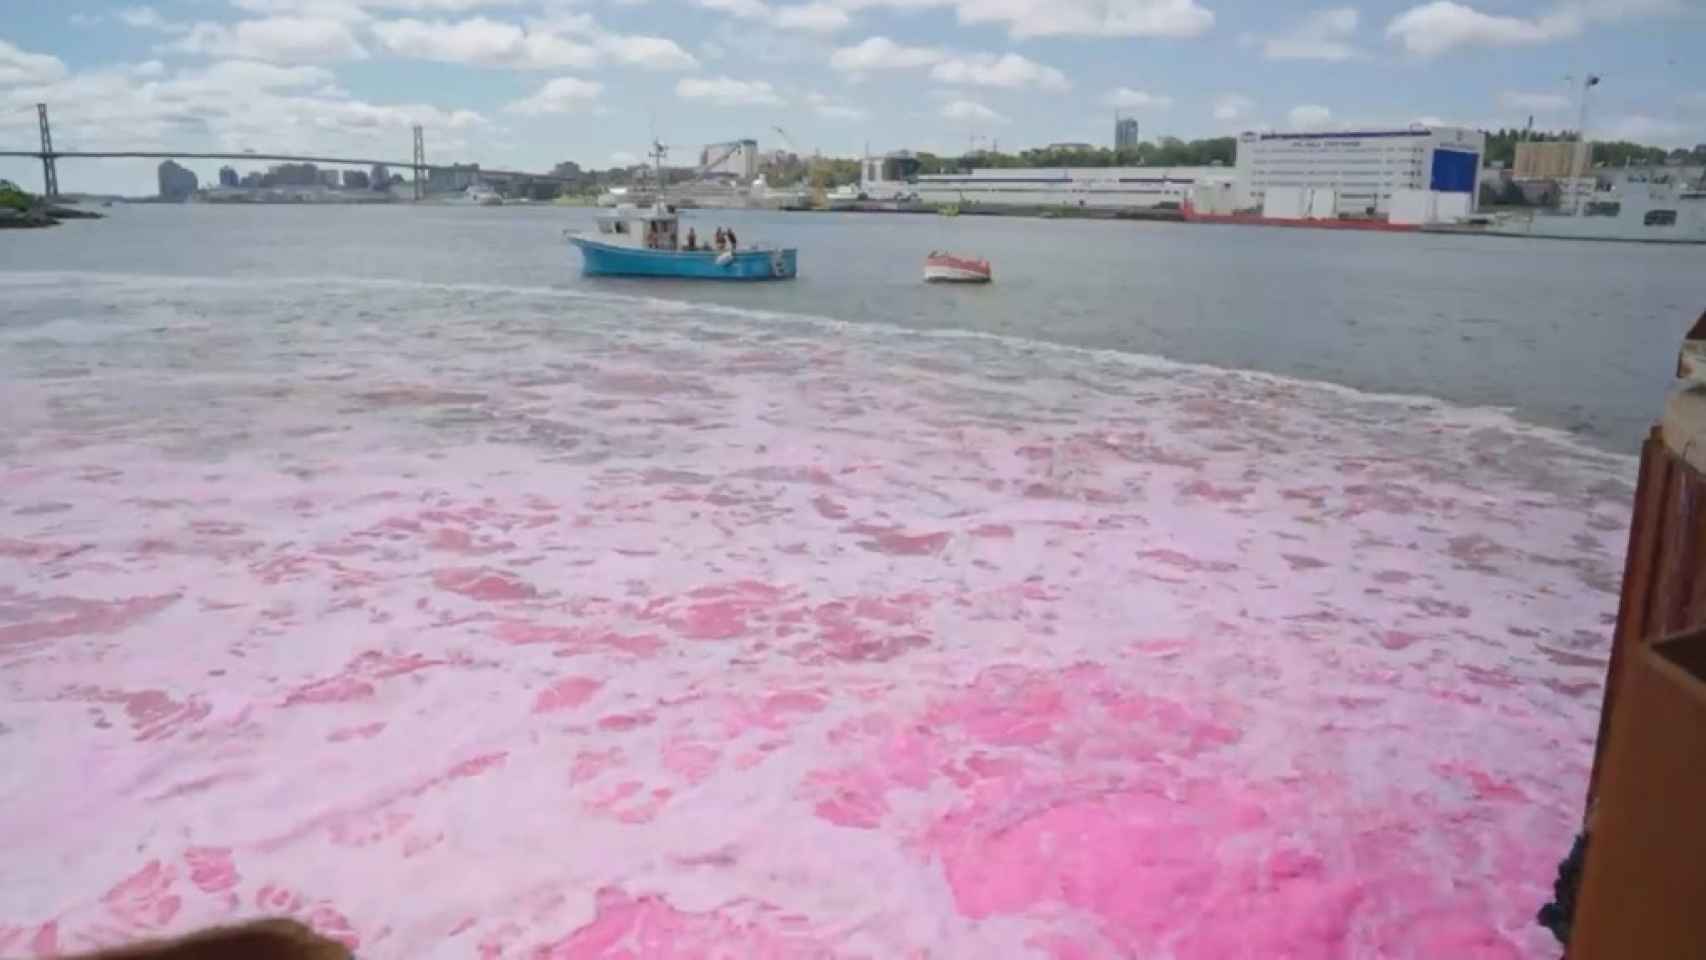 Los investigadores liberaron un tinte rosa para ver cómo se desplazaba la sustancia por la marea.